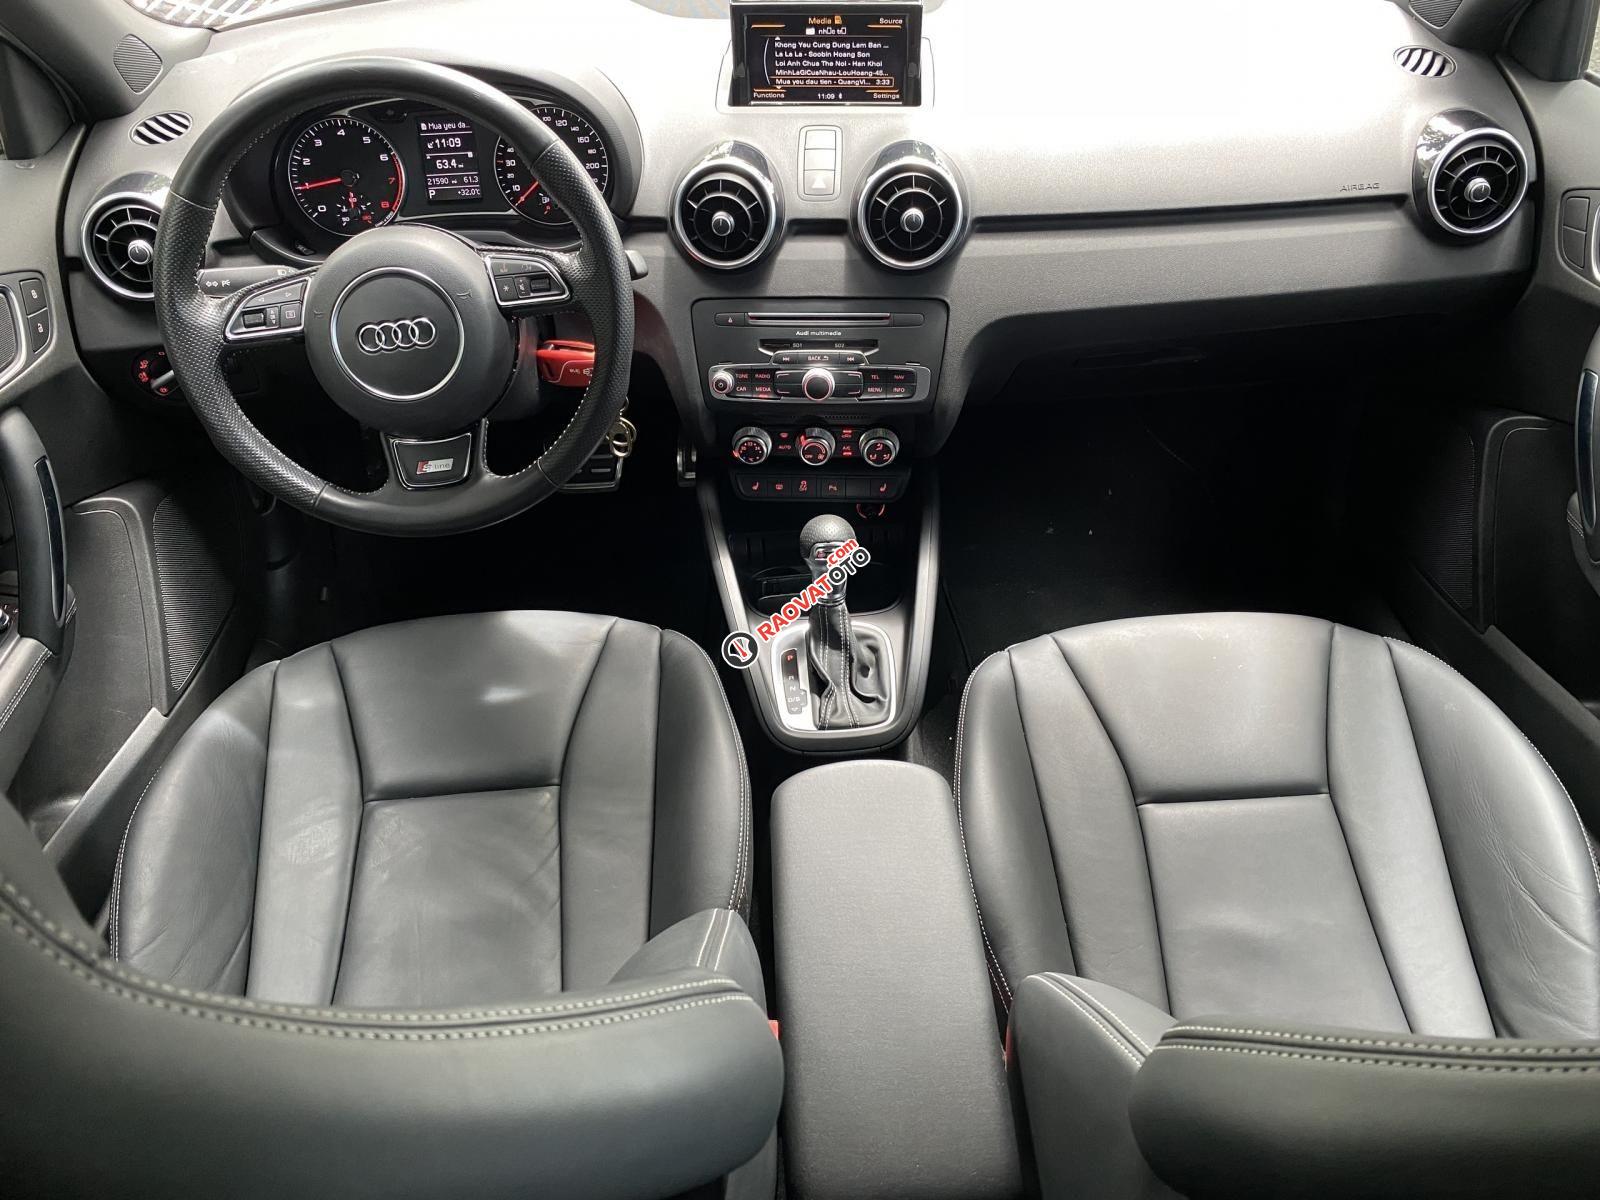 Bán xe Audi A1 bản S-line năm 2015, siêu lướt 21.000km nội thất đen zin nguyên bản, option miên man-2